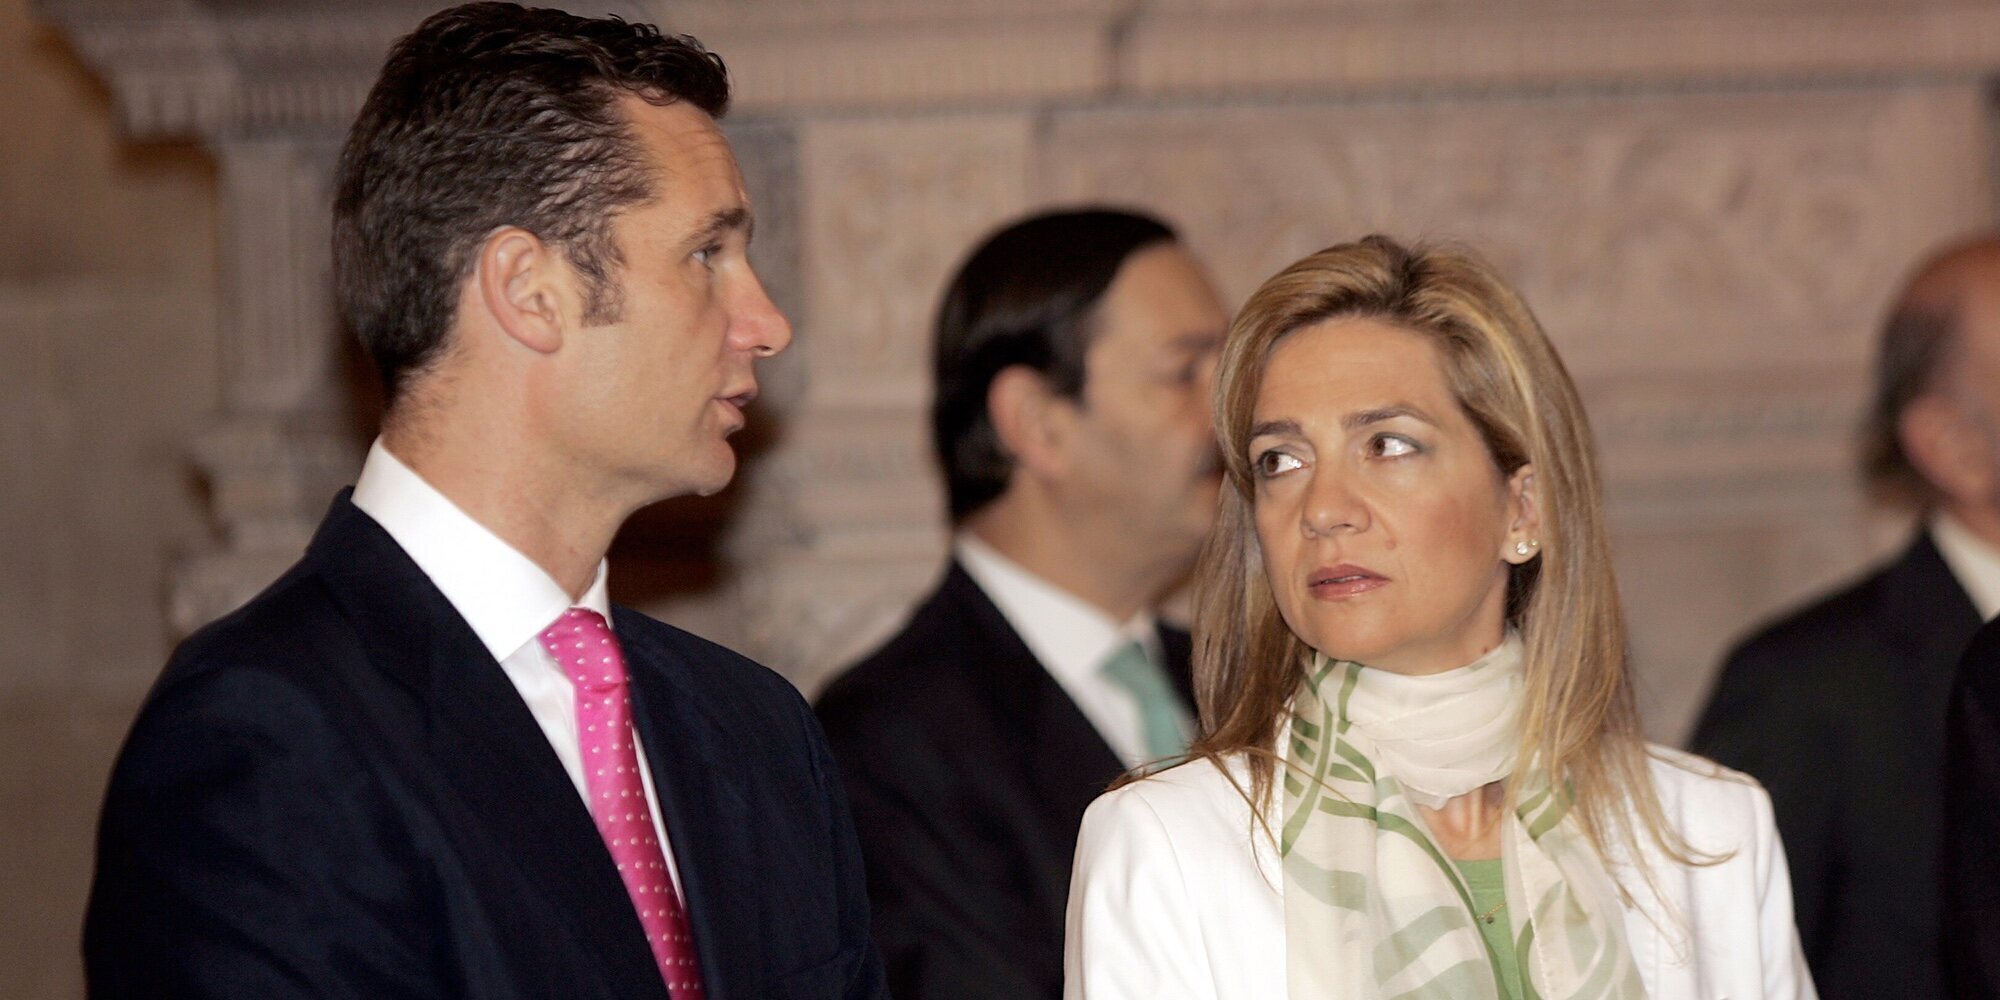 La otra petición económica de Iñaki Urdangarin a la Infanta Cristina para poder mantener un privilegio de su vida royal